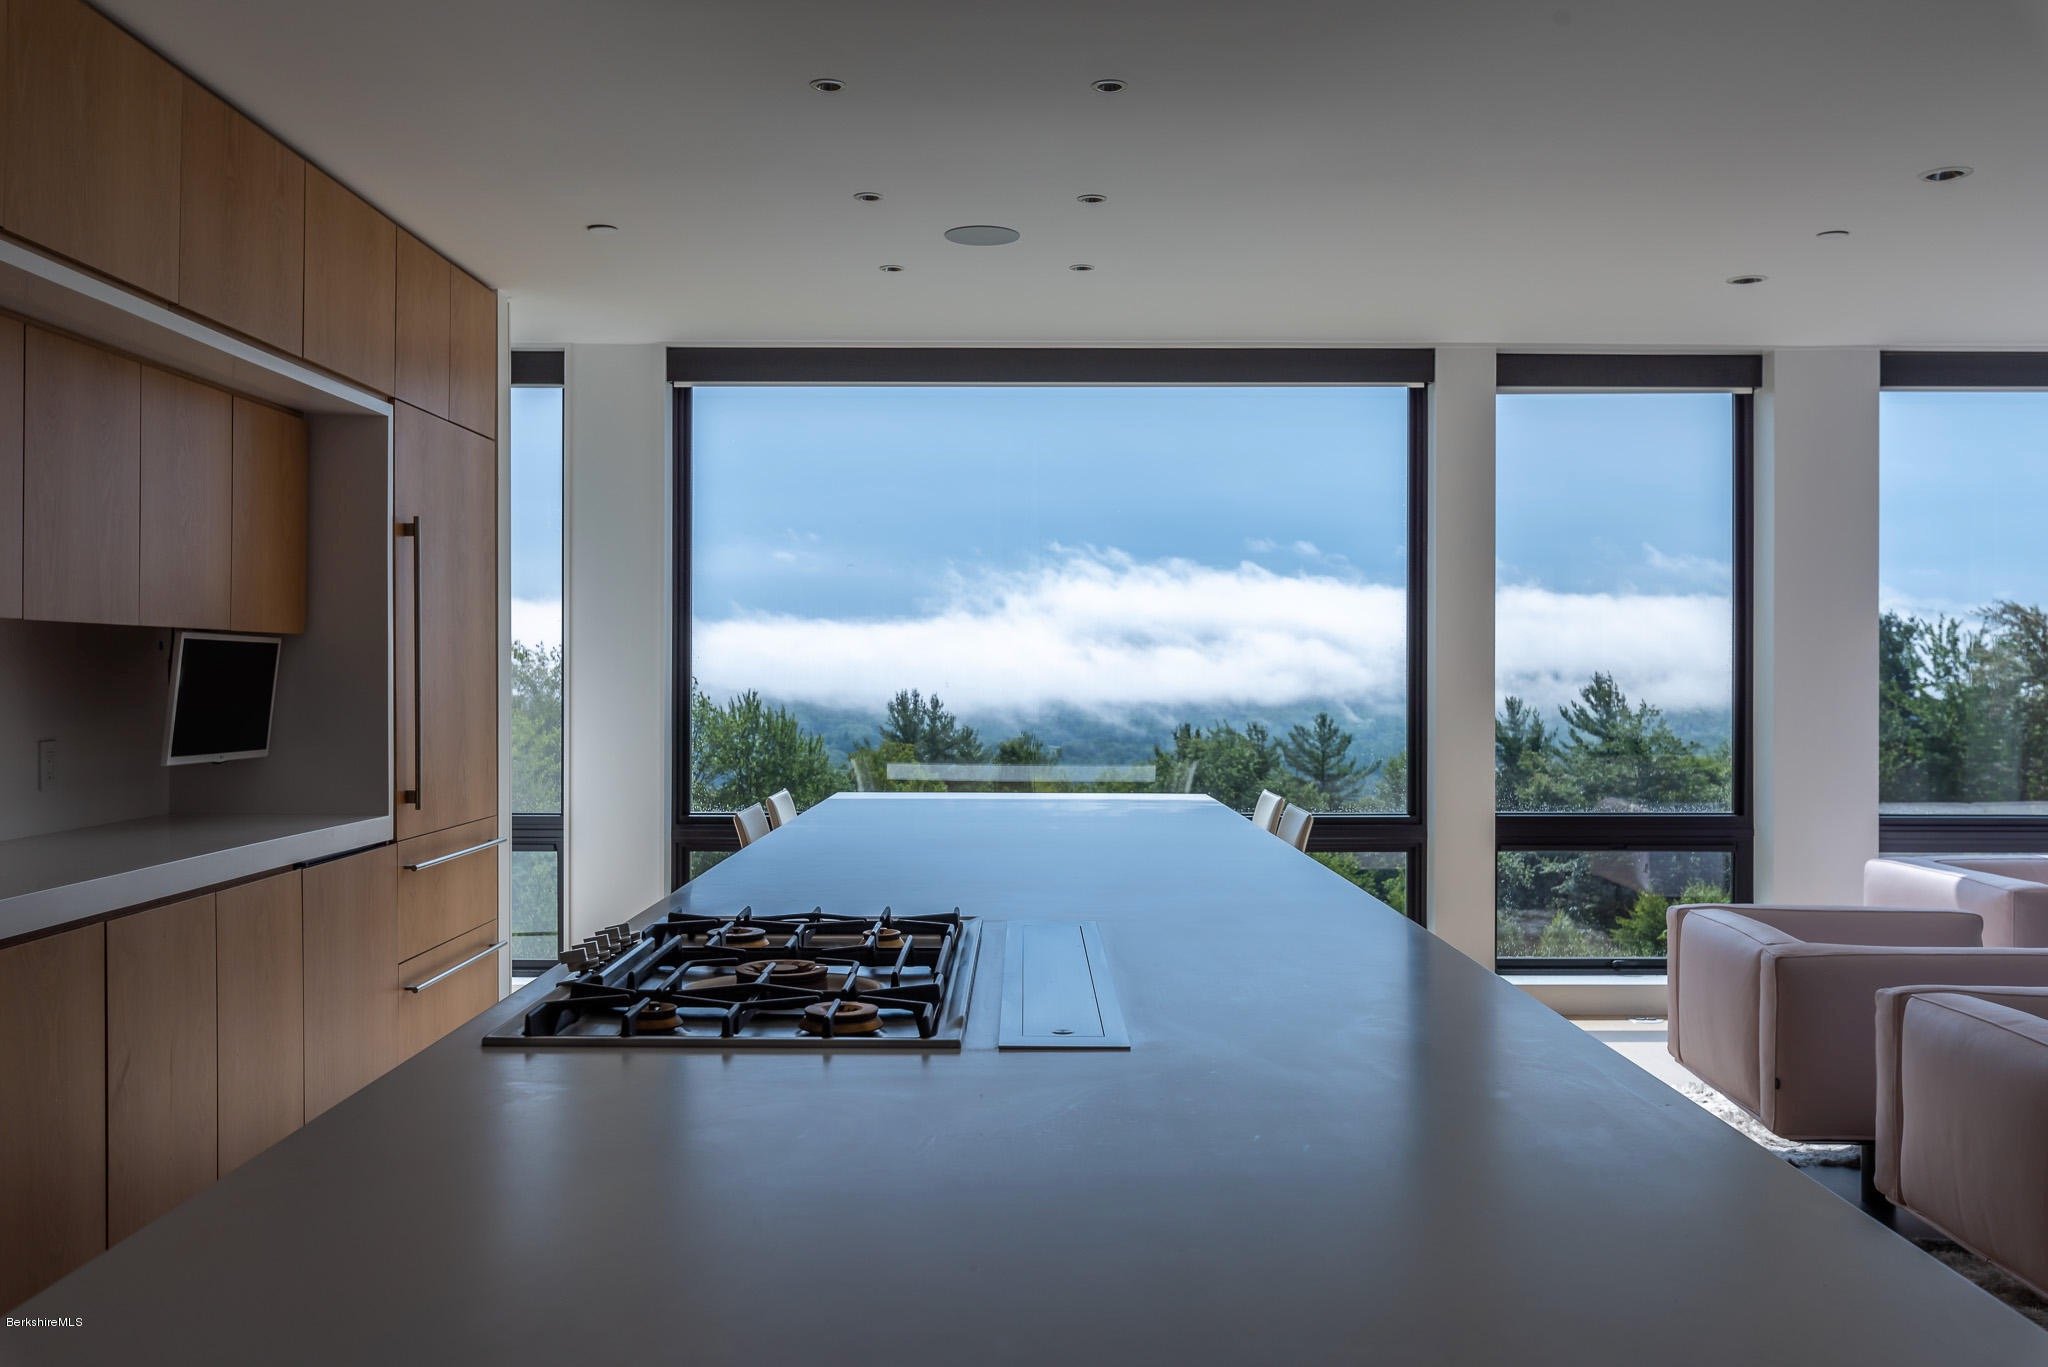 11-re4a-resolution-4-architecture-modern-modular-prefab-west-stockbridge-kitchen-view.jpg